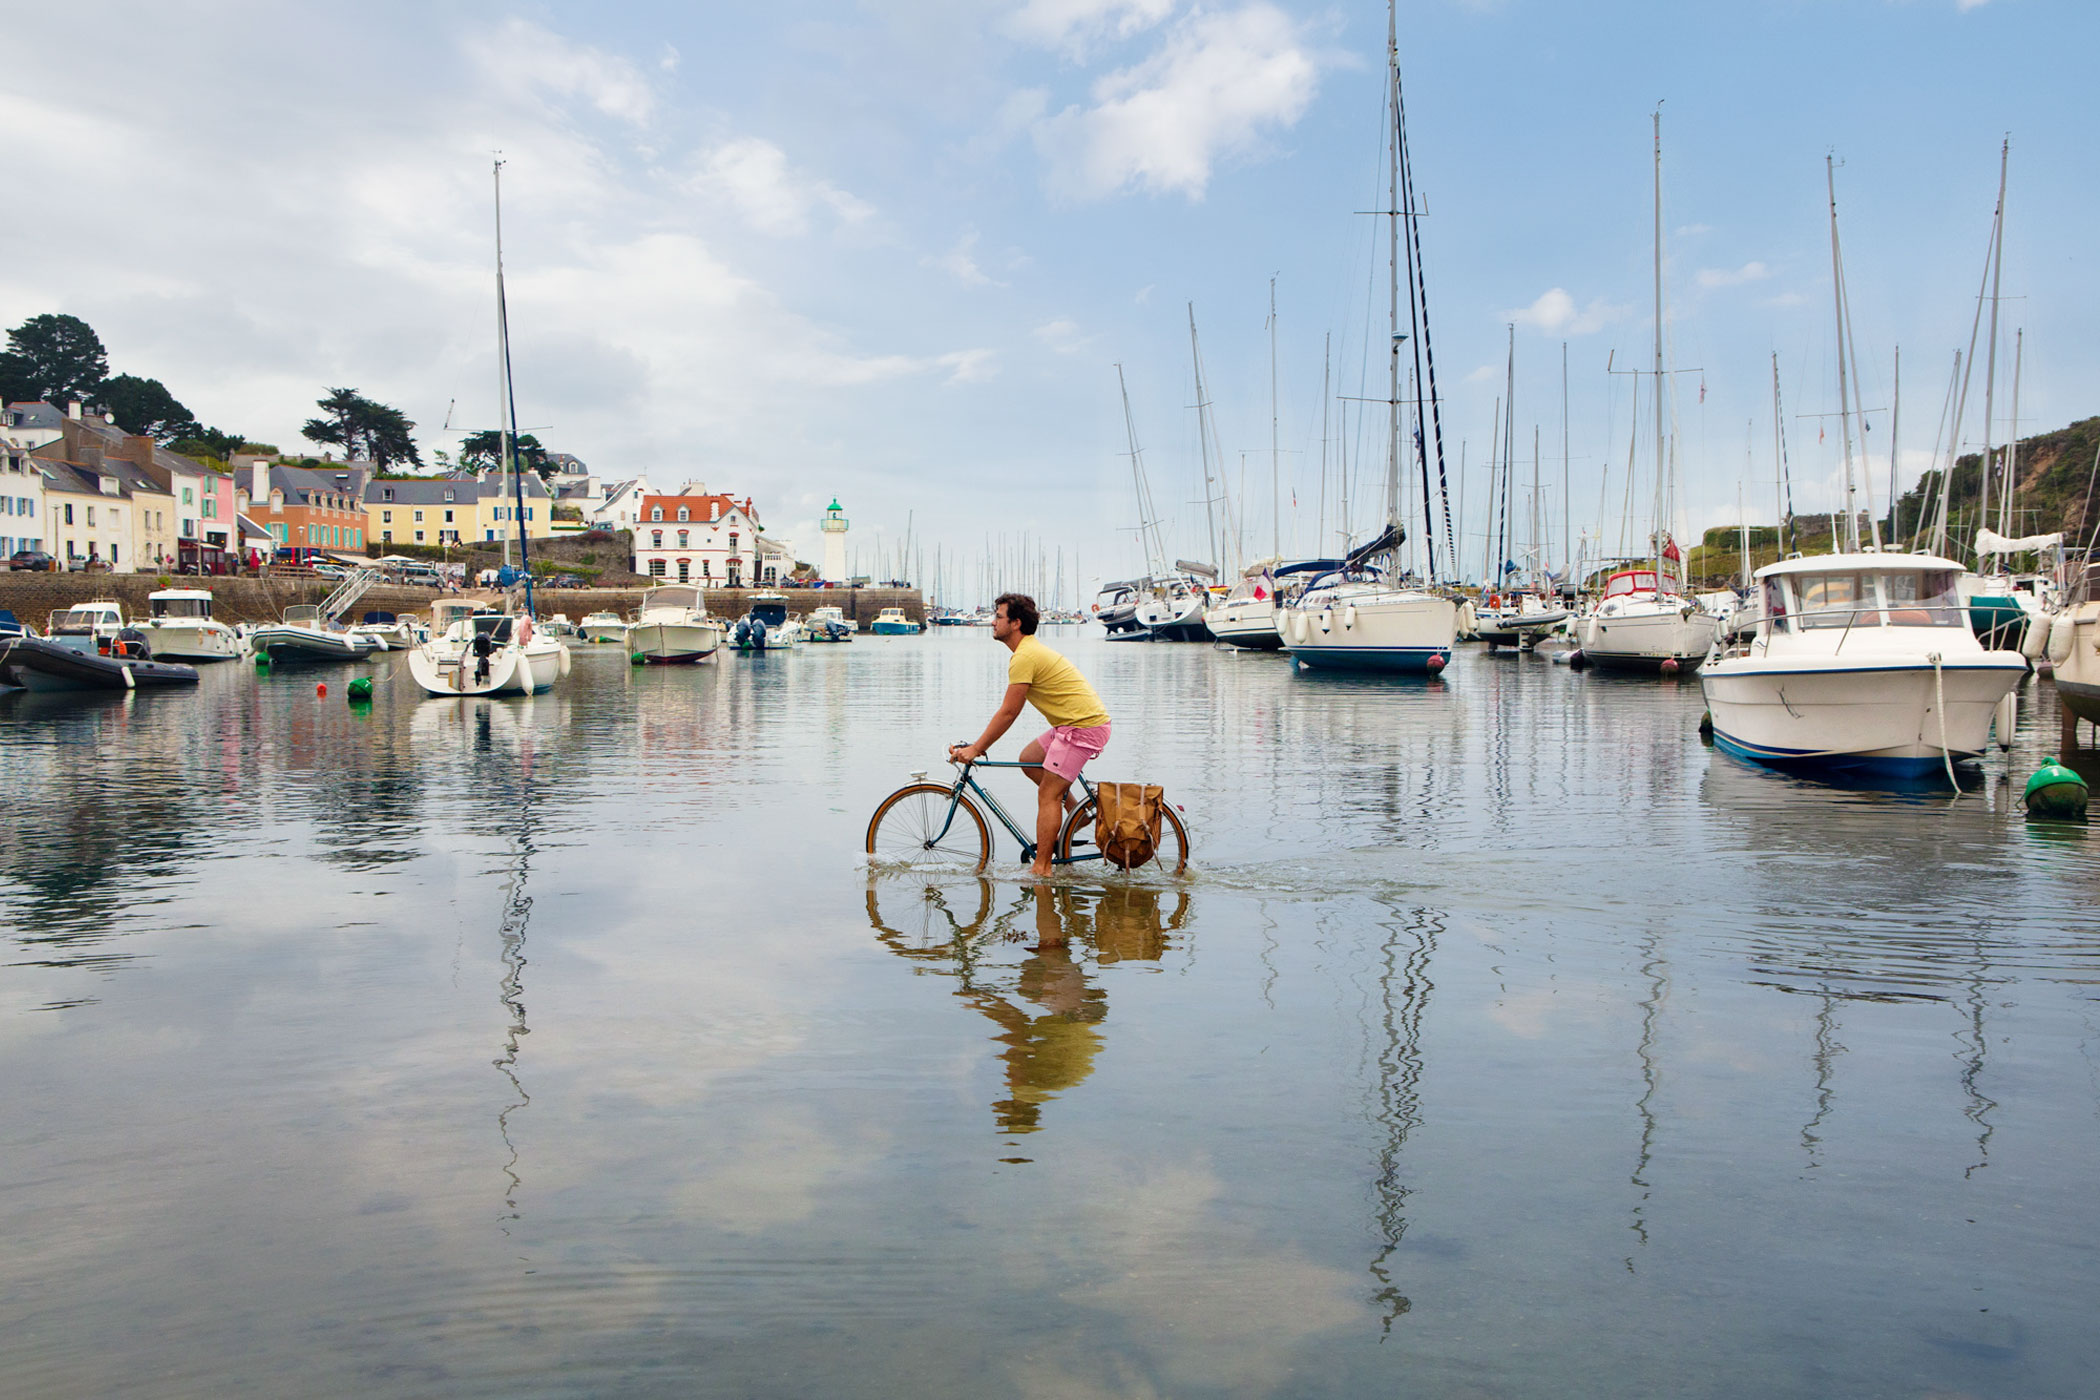 Vélo sur l'eau - cycling on water - Aurélia Faudot - photographie - détouré